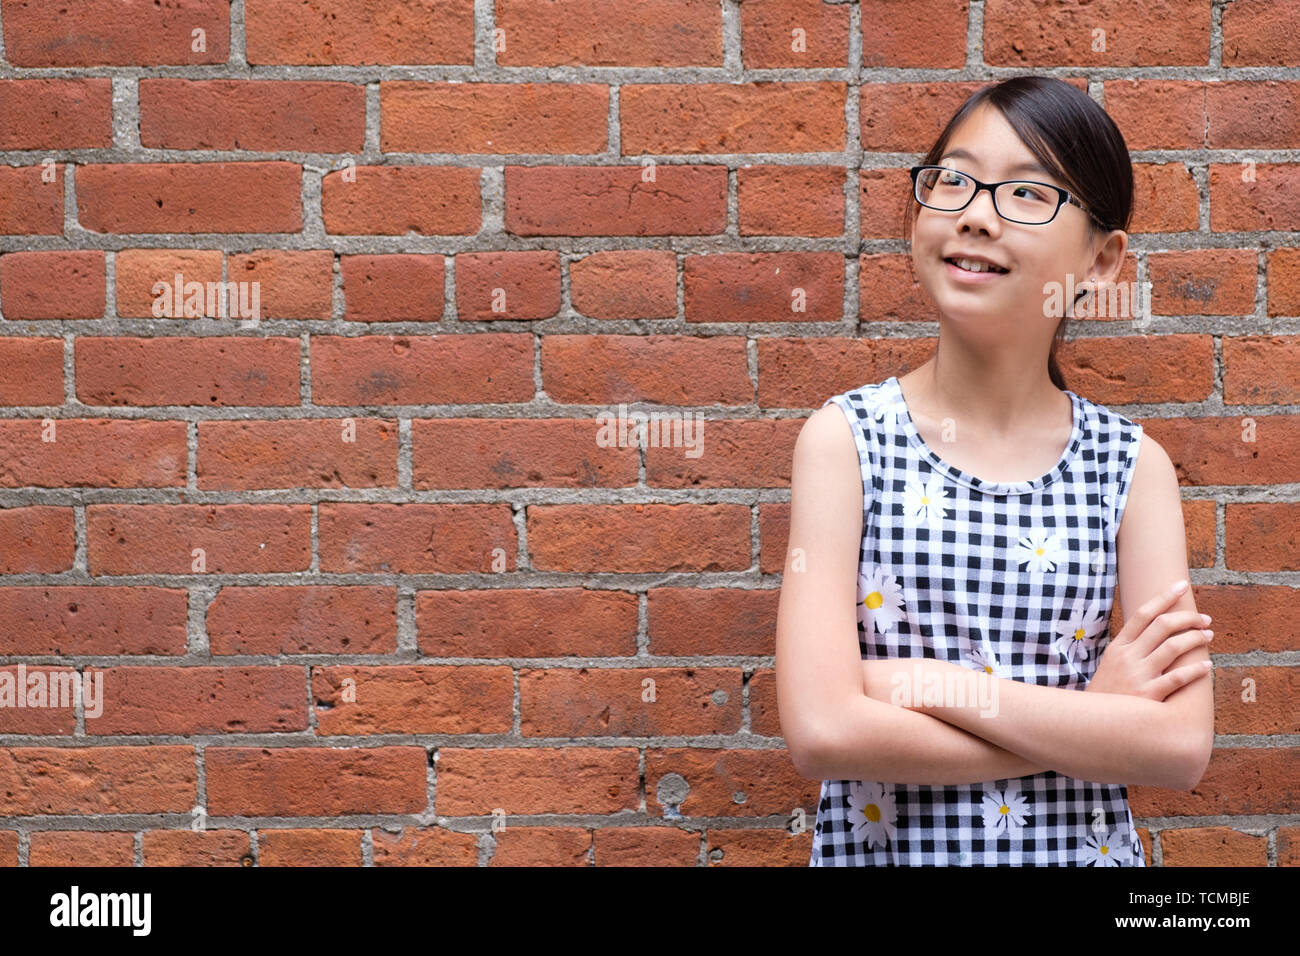 Portrait de jeune fille asiatique contre le mur de brique rouge Banque D'Images